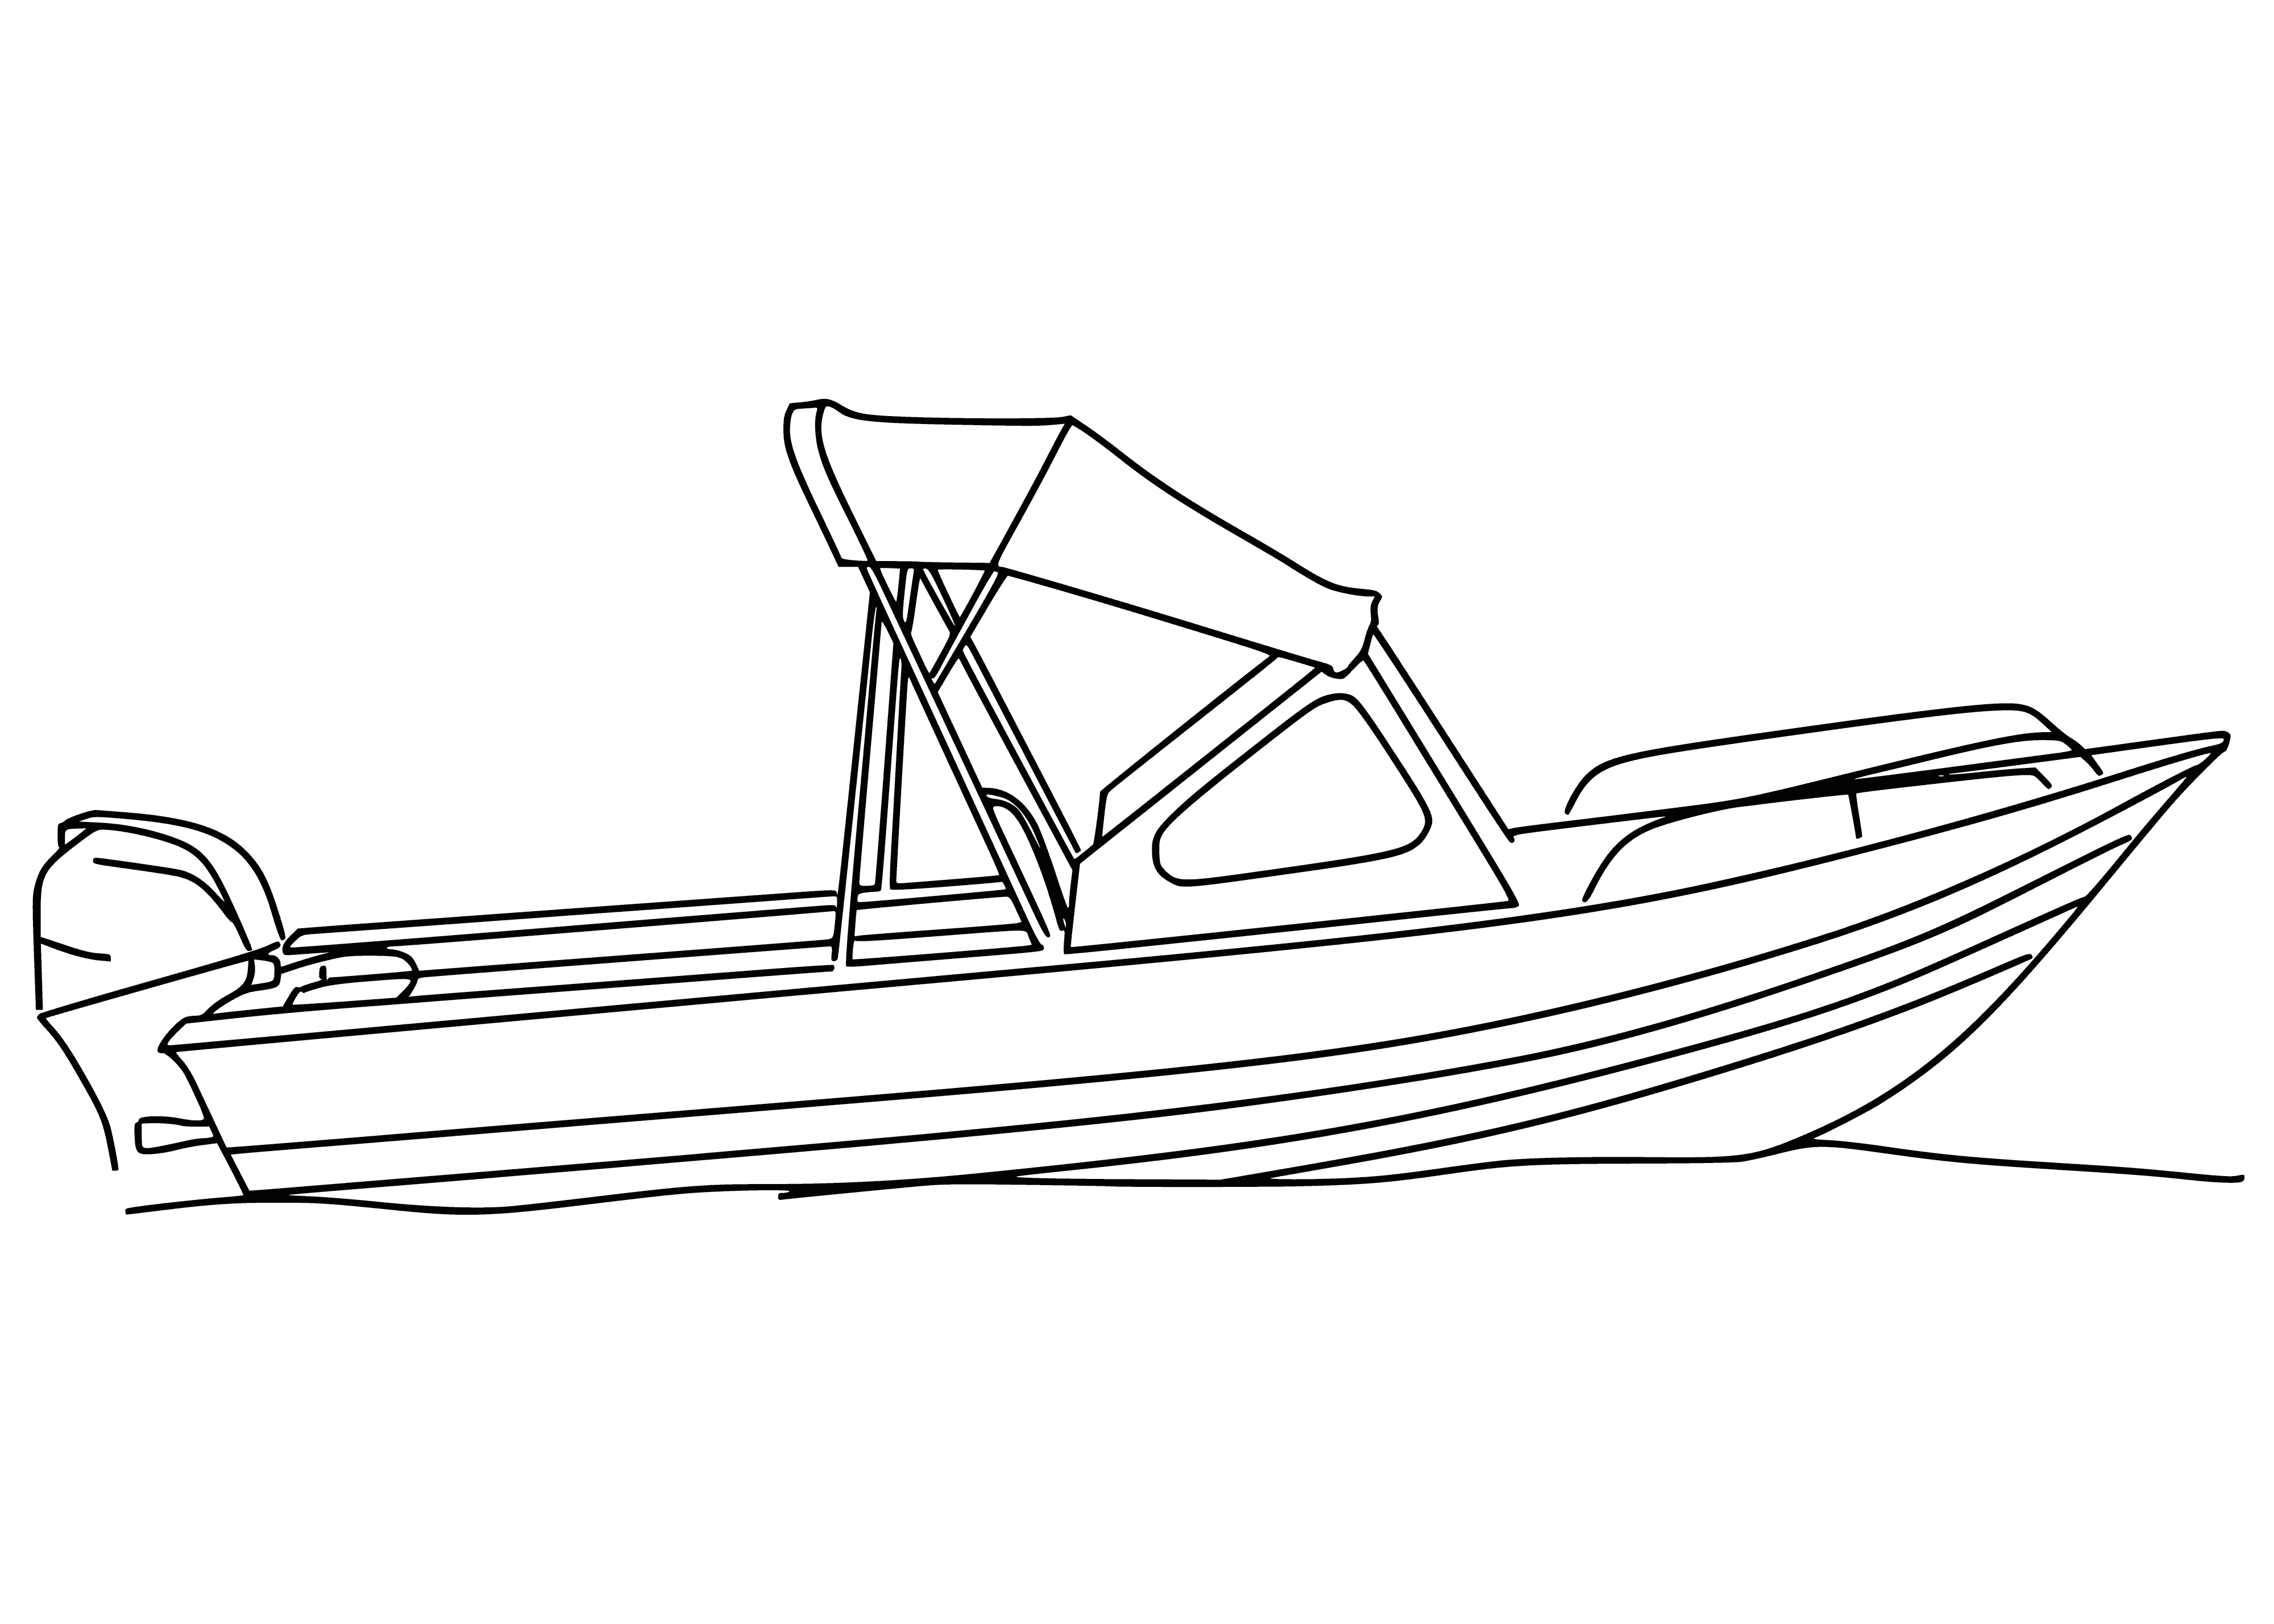 Bir tekne boyama sayfası